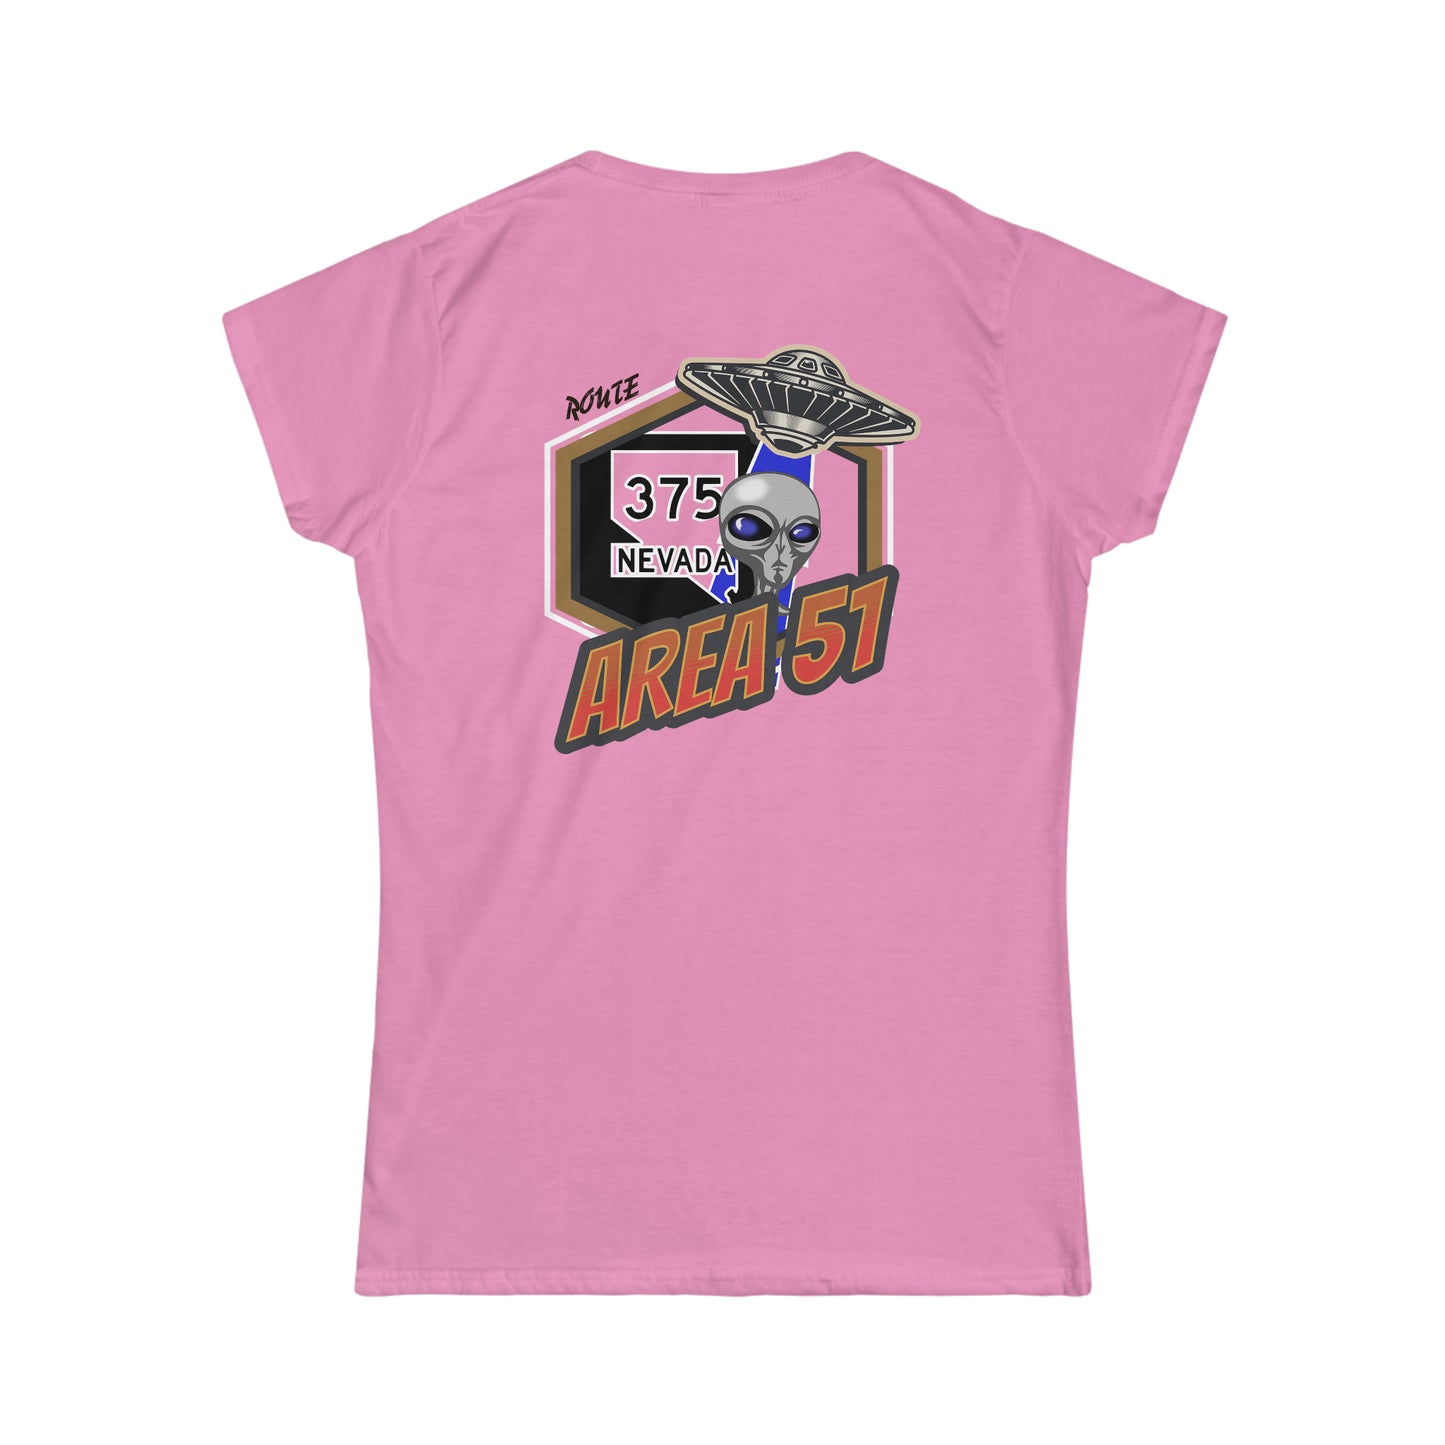 RT 375 Nevada, Area 51, Women's Softstyle Tee